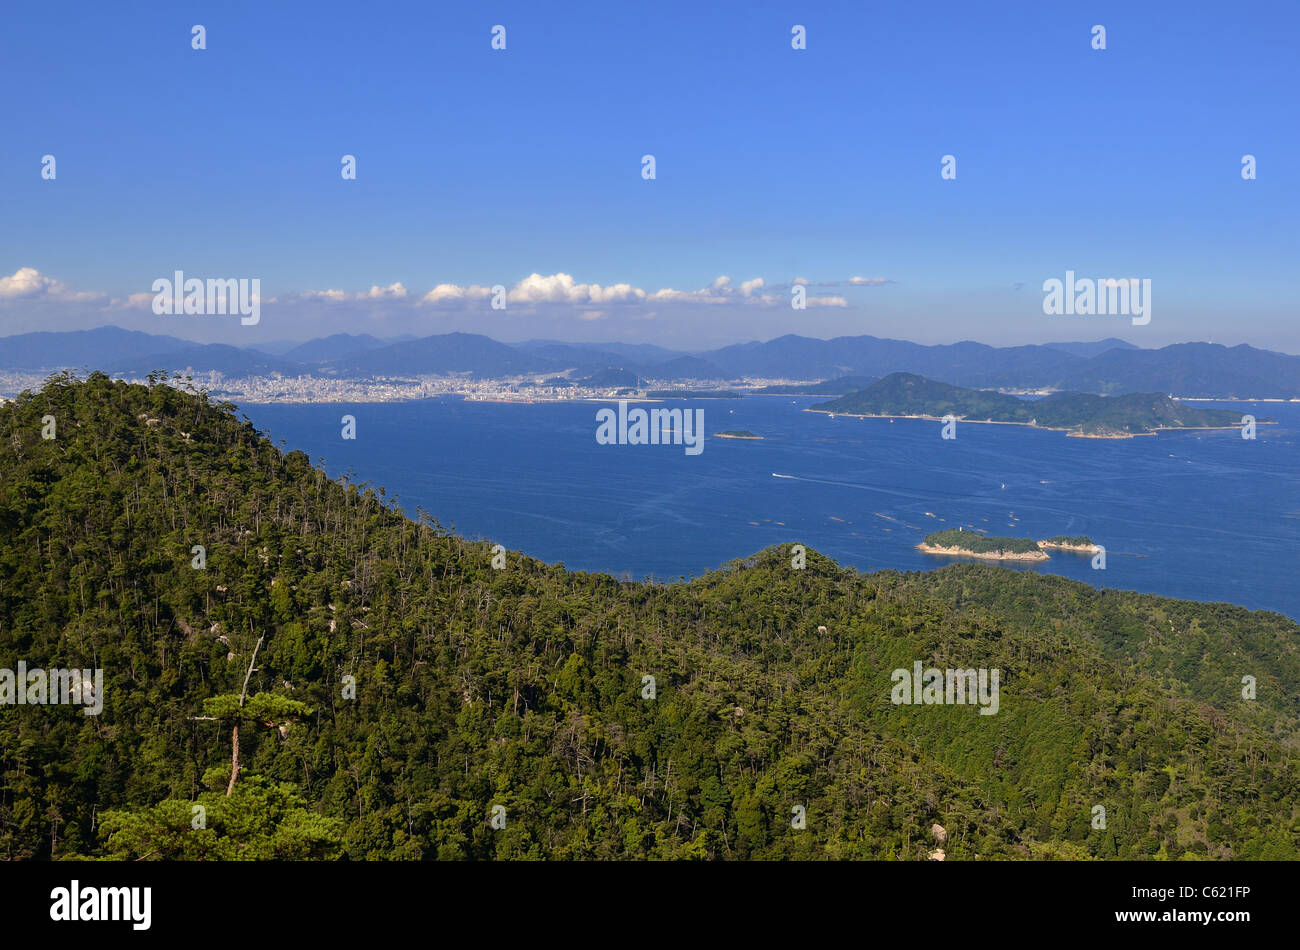 Seto-Inlandsee in Japan vom Berg Misen auf Itsukushima Insel gesehen. Stockfoto